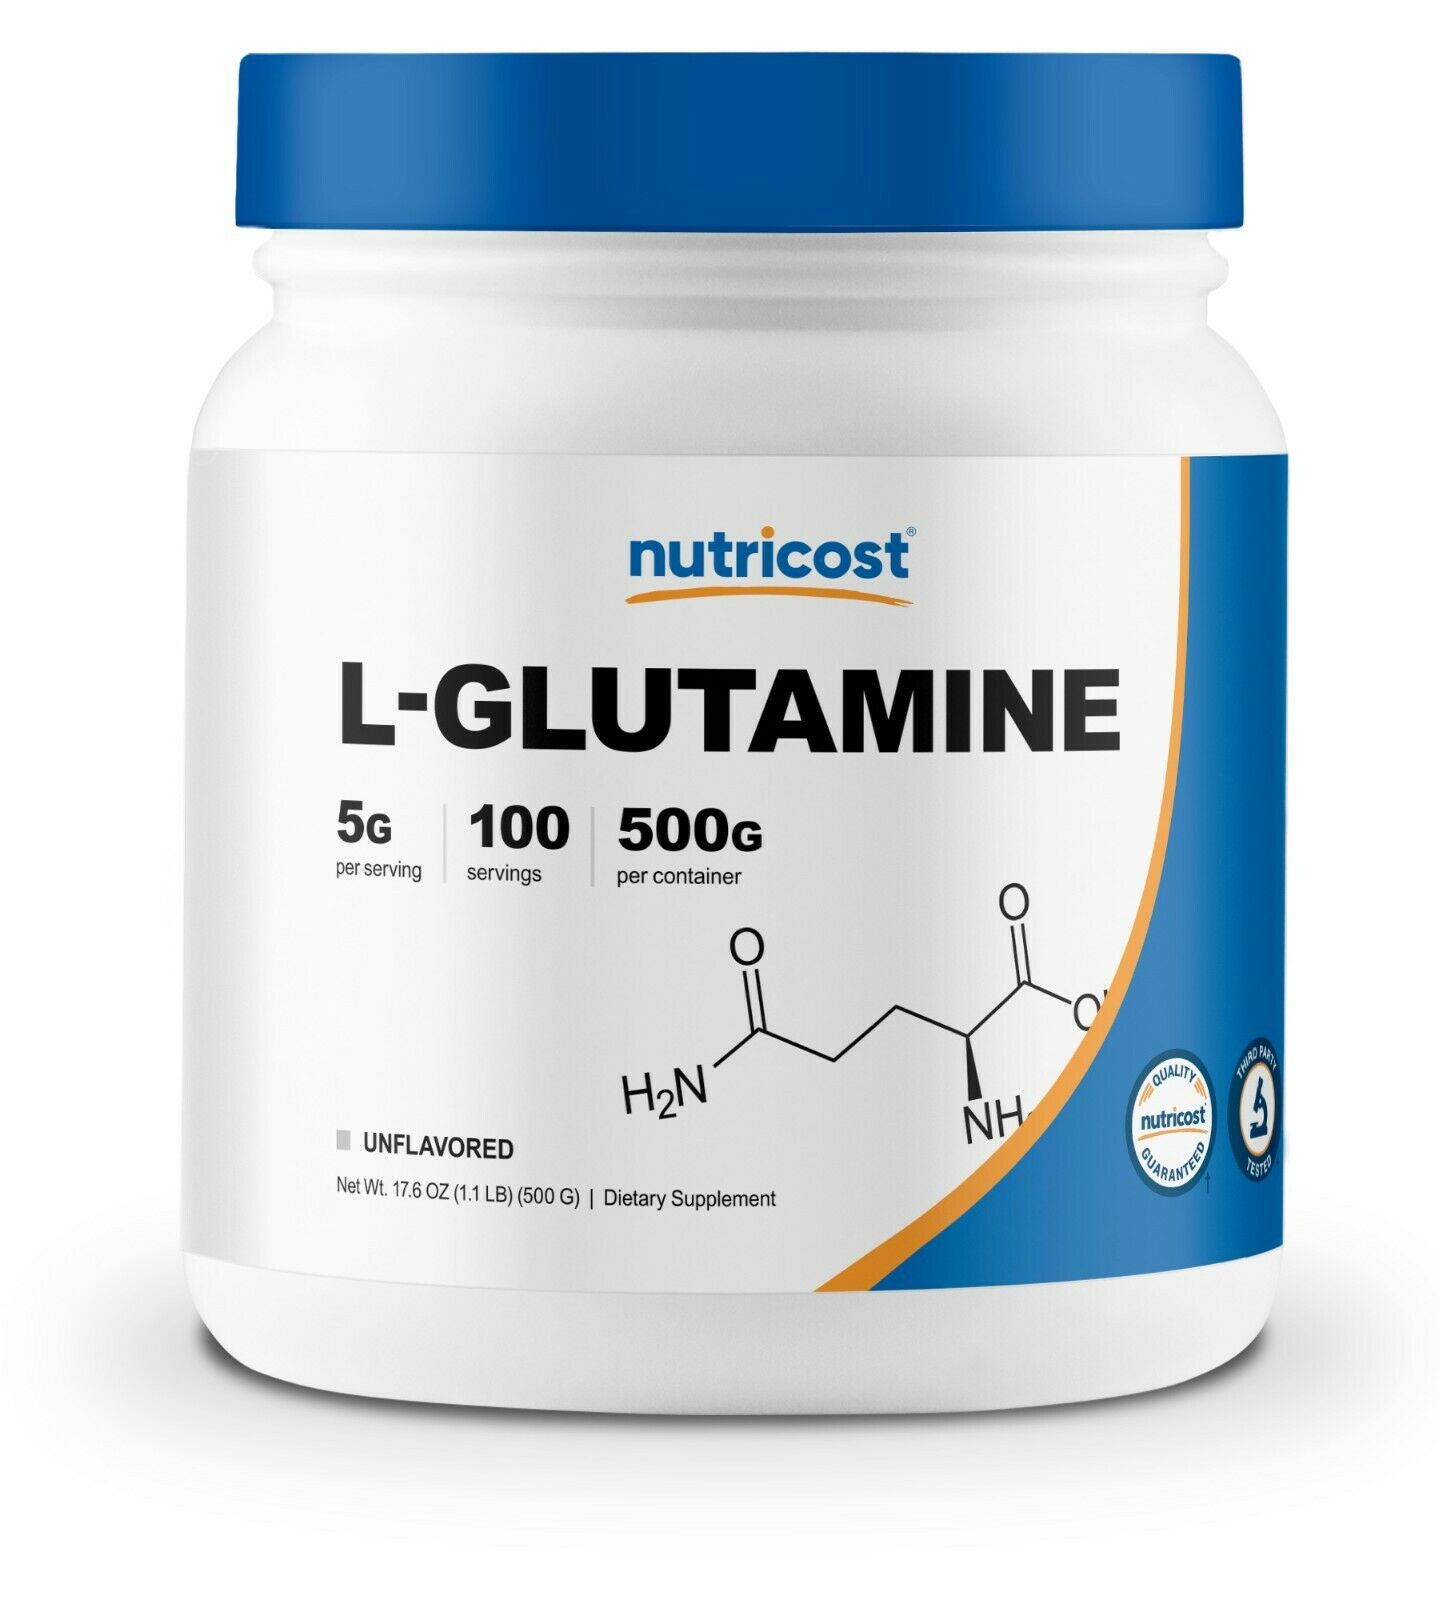 Nutricost Pure L-glutamine Powder 500g - 100 Servings, Non-gmo & Gluten Free